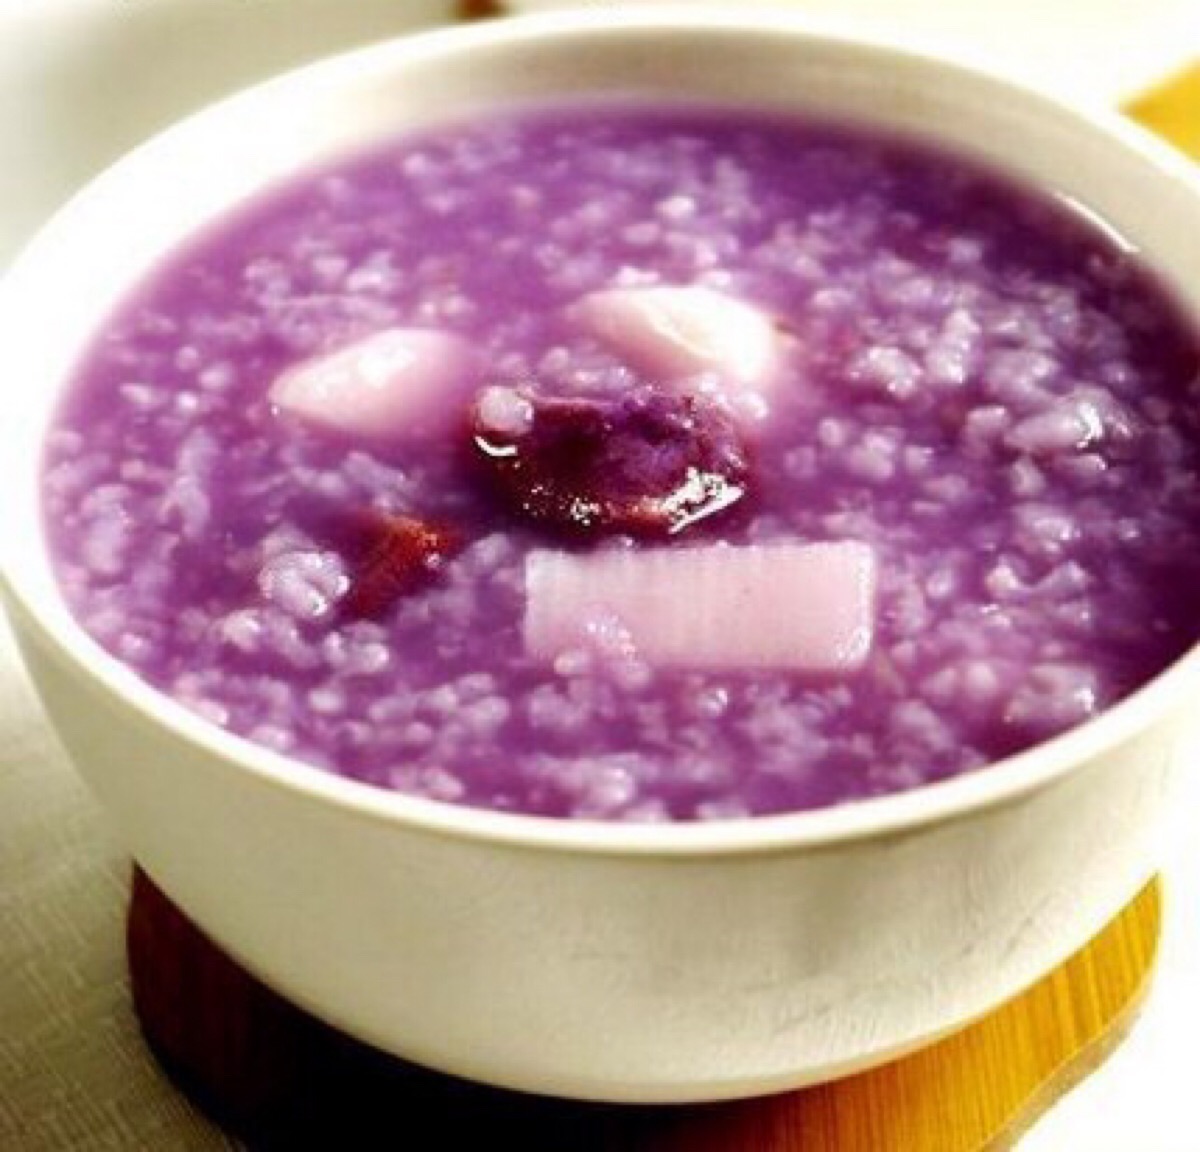 【紫薯山药粥】原料:紫薯1个,山药1段(1尺长左右),大米1杯,冰糖适量